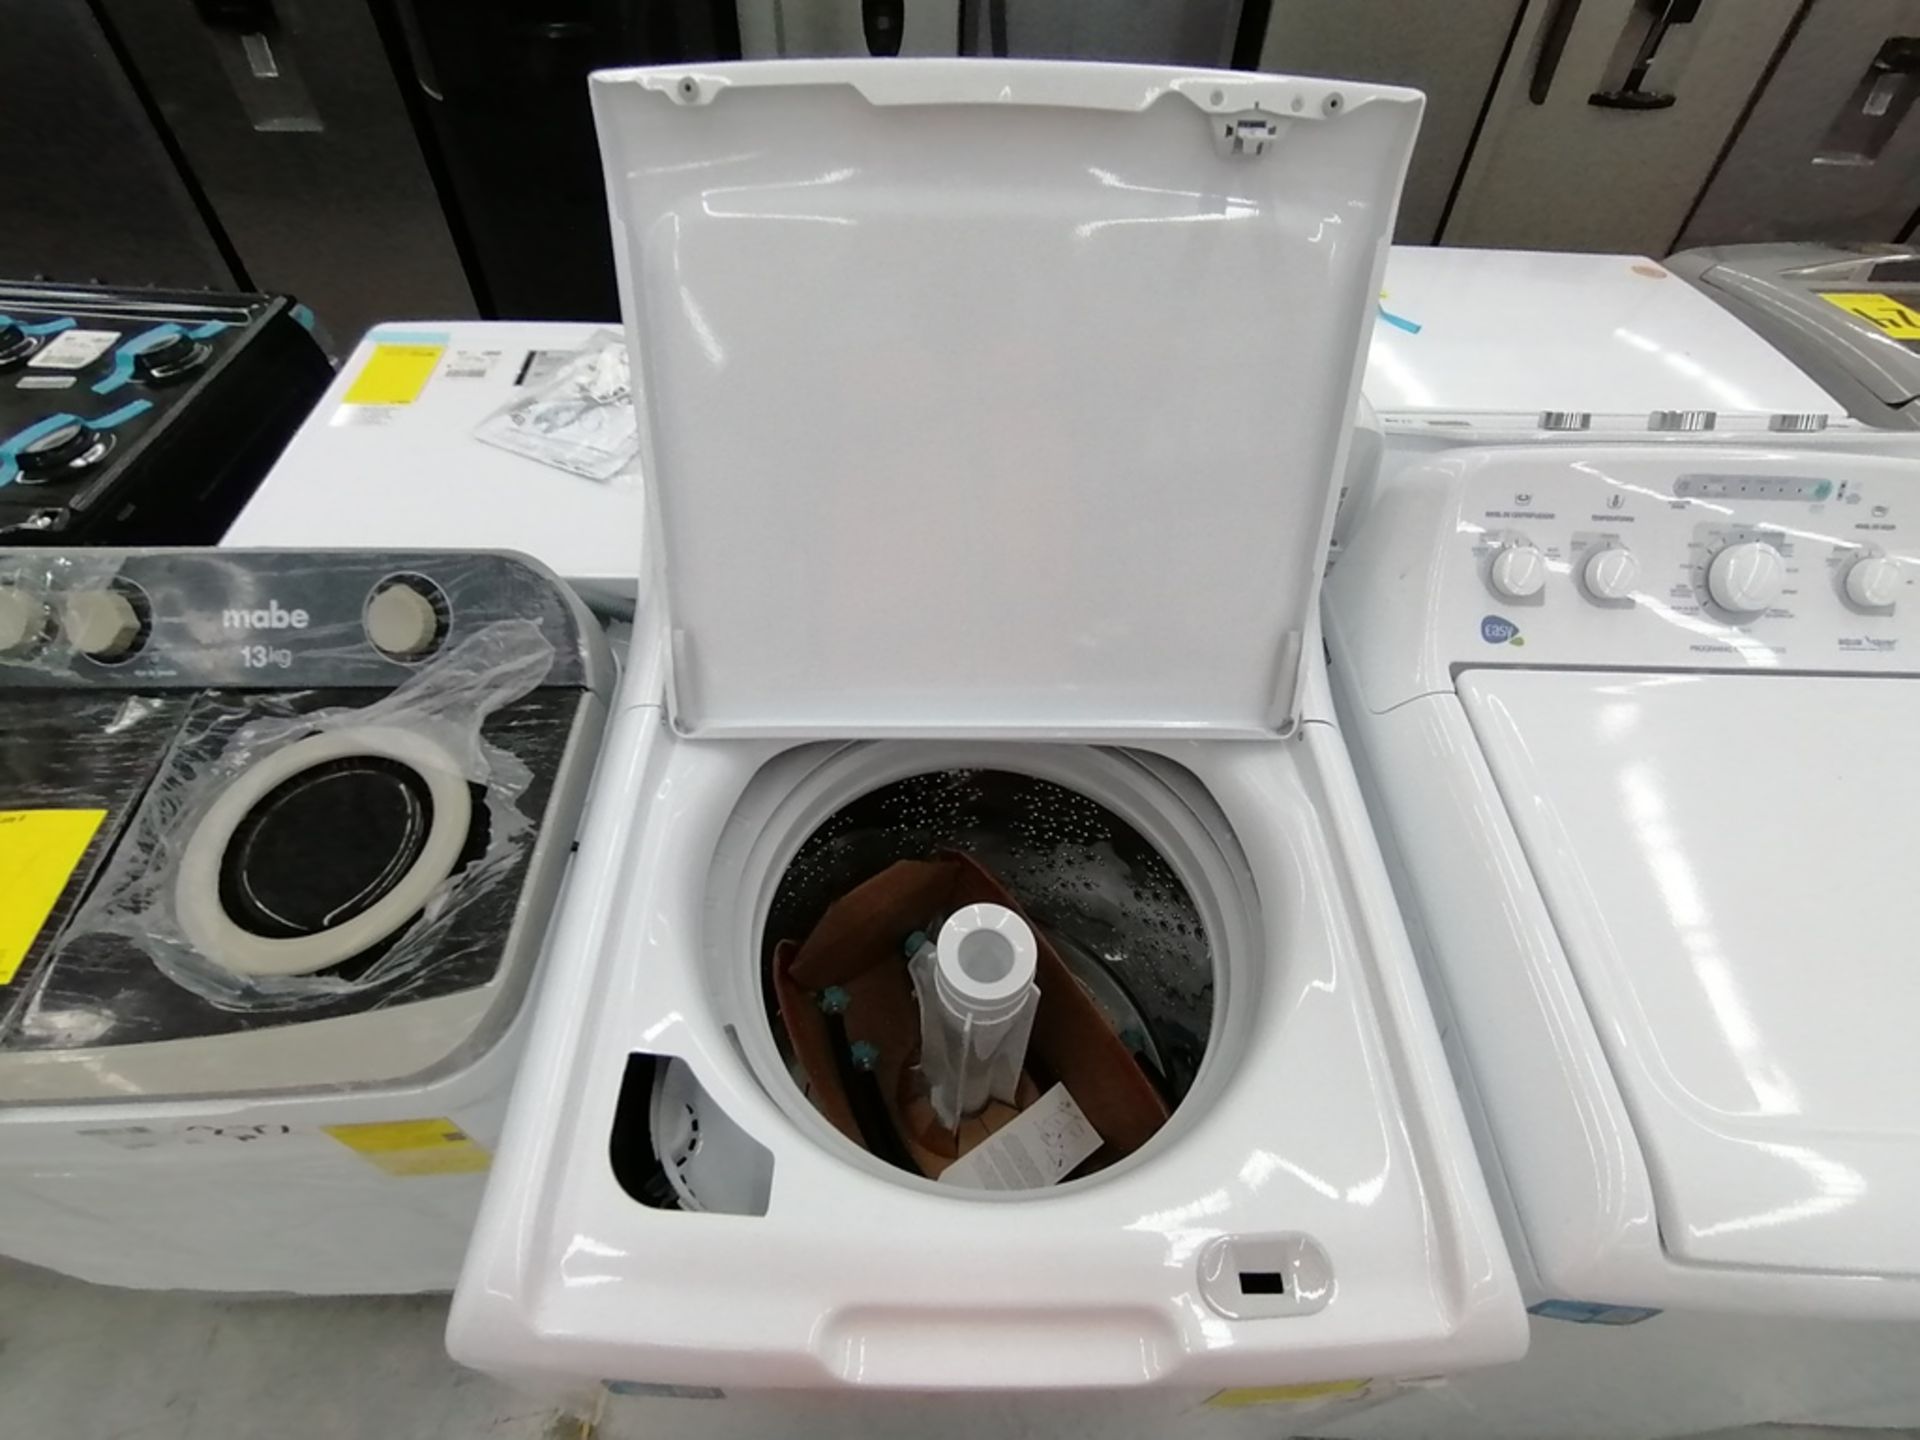 Lote de 3 lavadoras contiene: 1 Lavadora de 17KG, Marca Easy, Modelo LEA77114CBAB03, Serie 2105S522 - Image 28 of 30